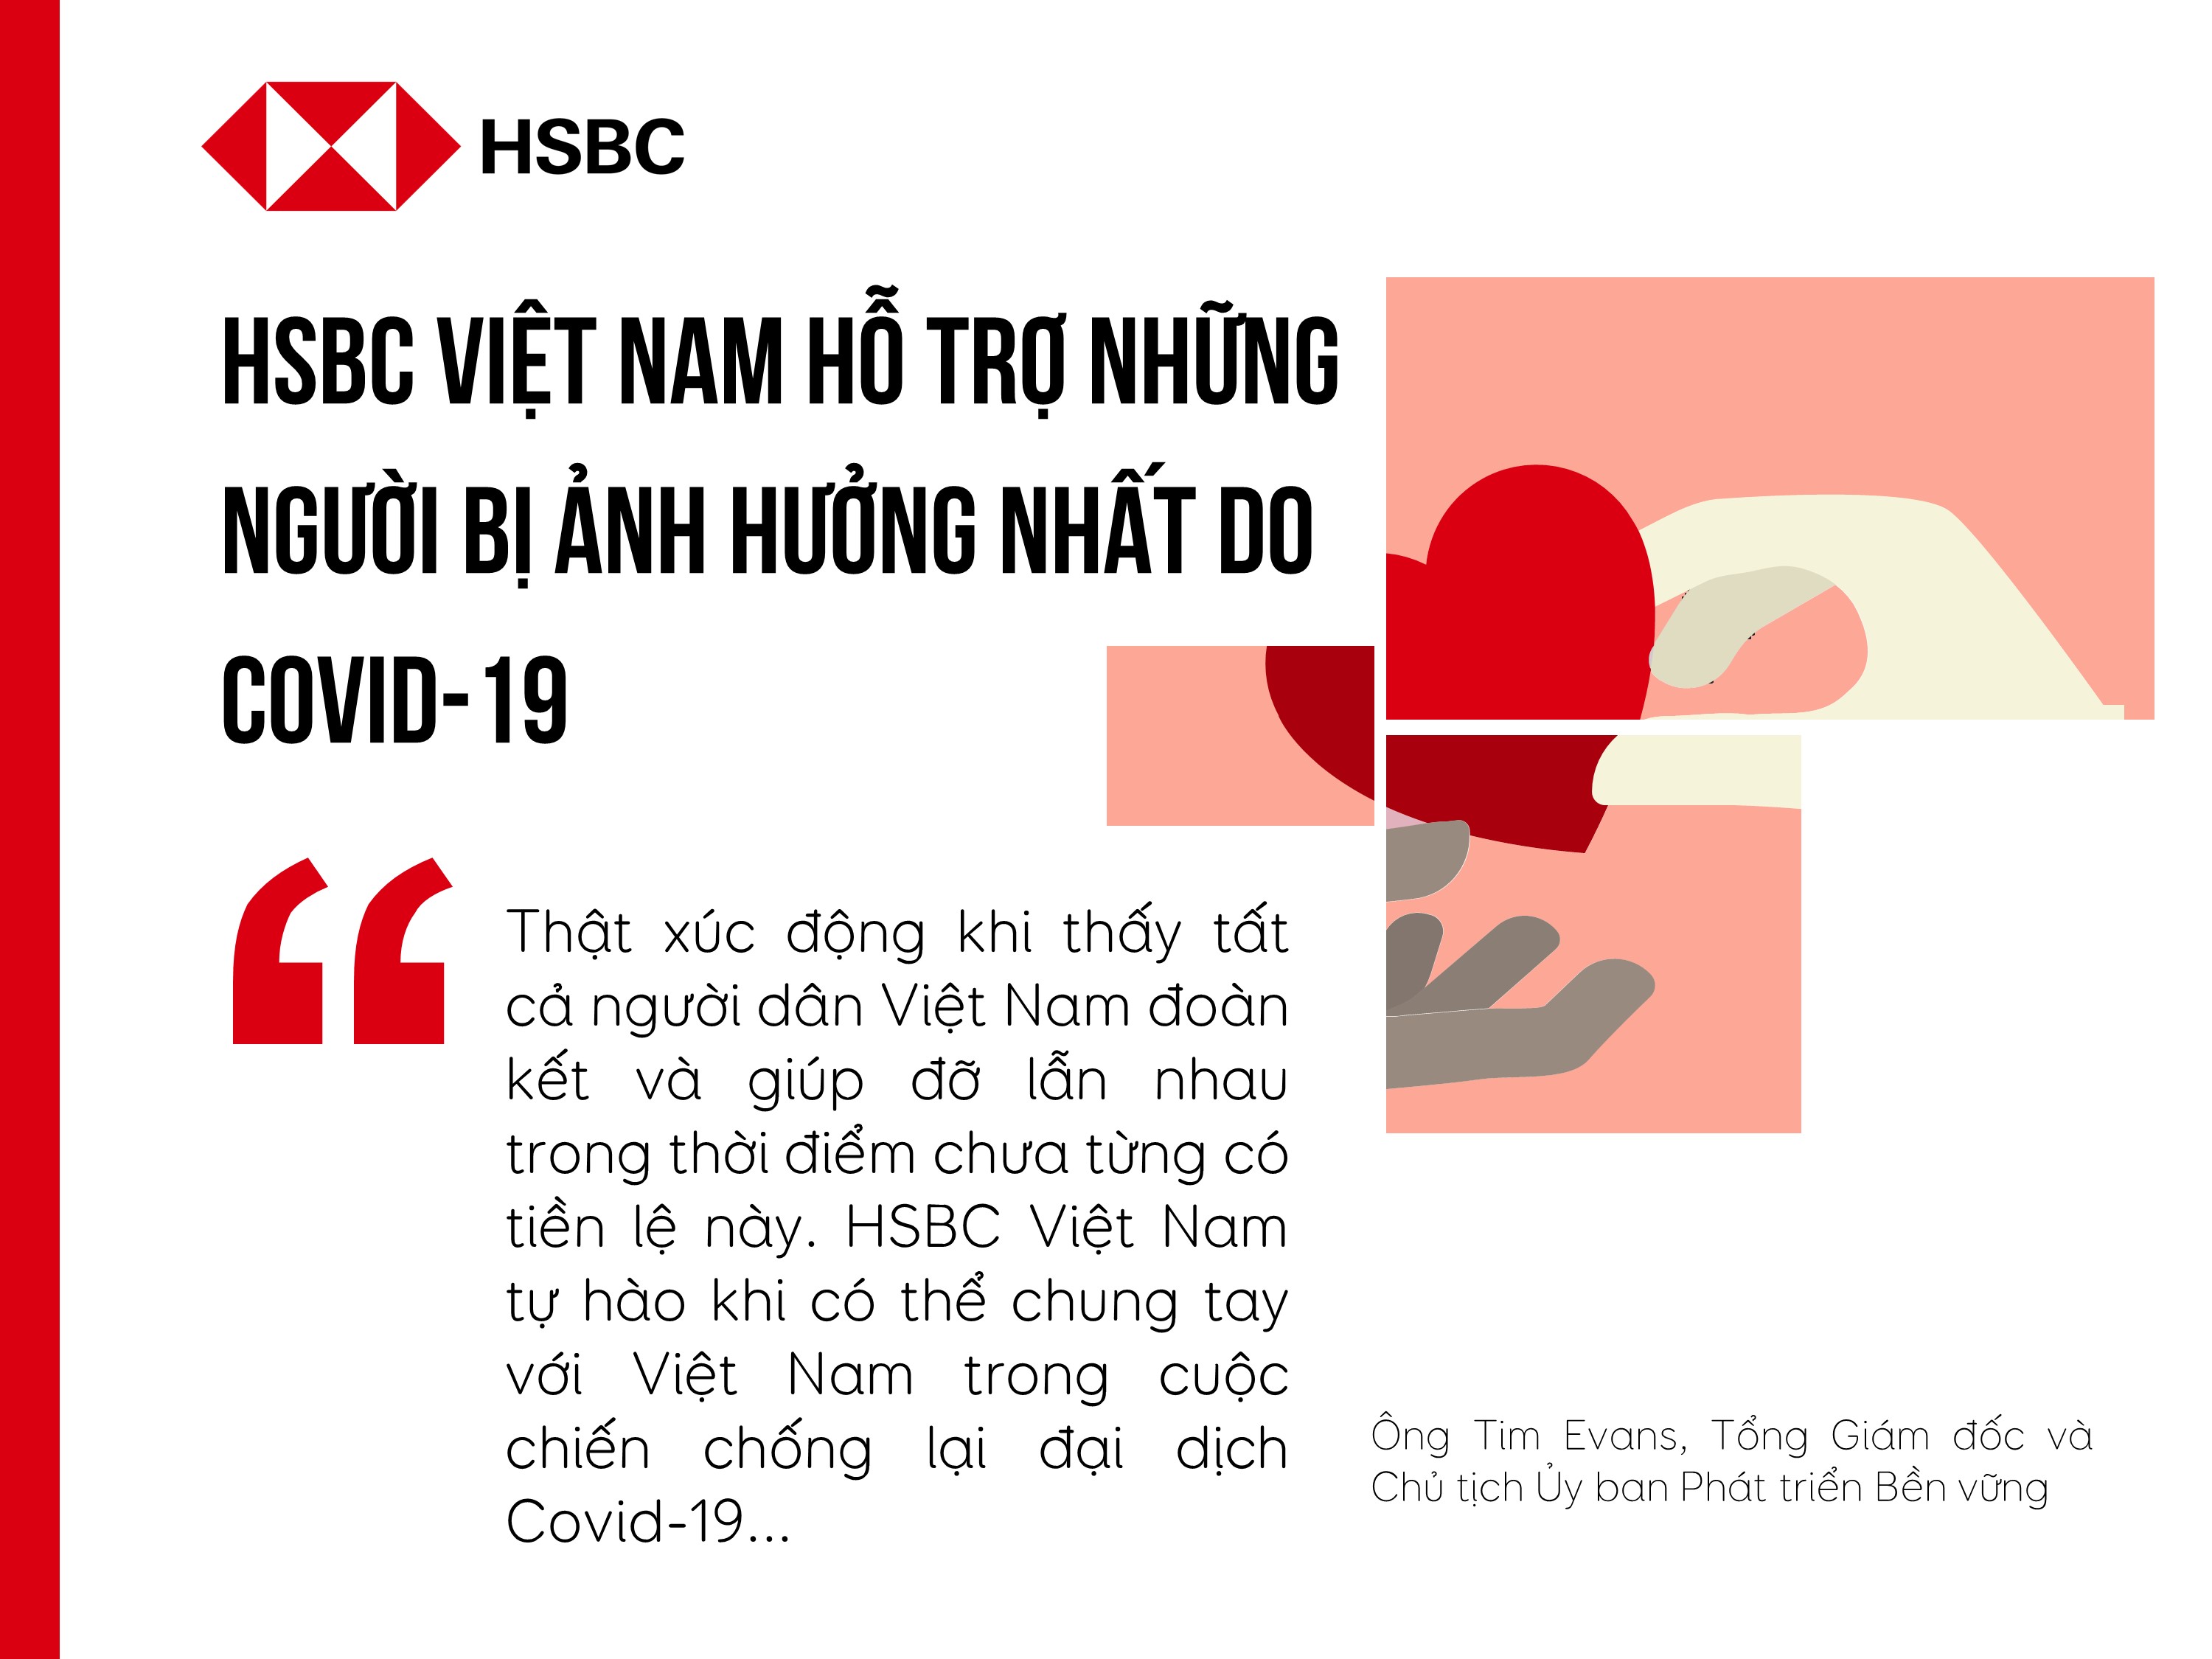 TCBC - HSBC Việt Nam hỗ trợ những người bị ảnh hưởng nhất do Covid-19